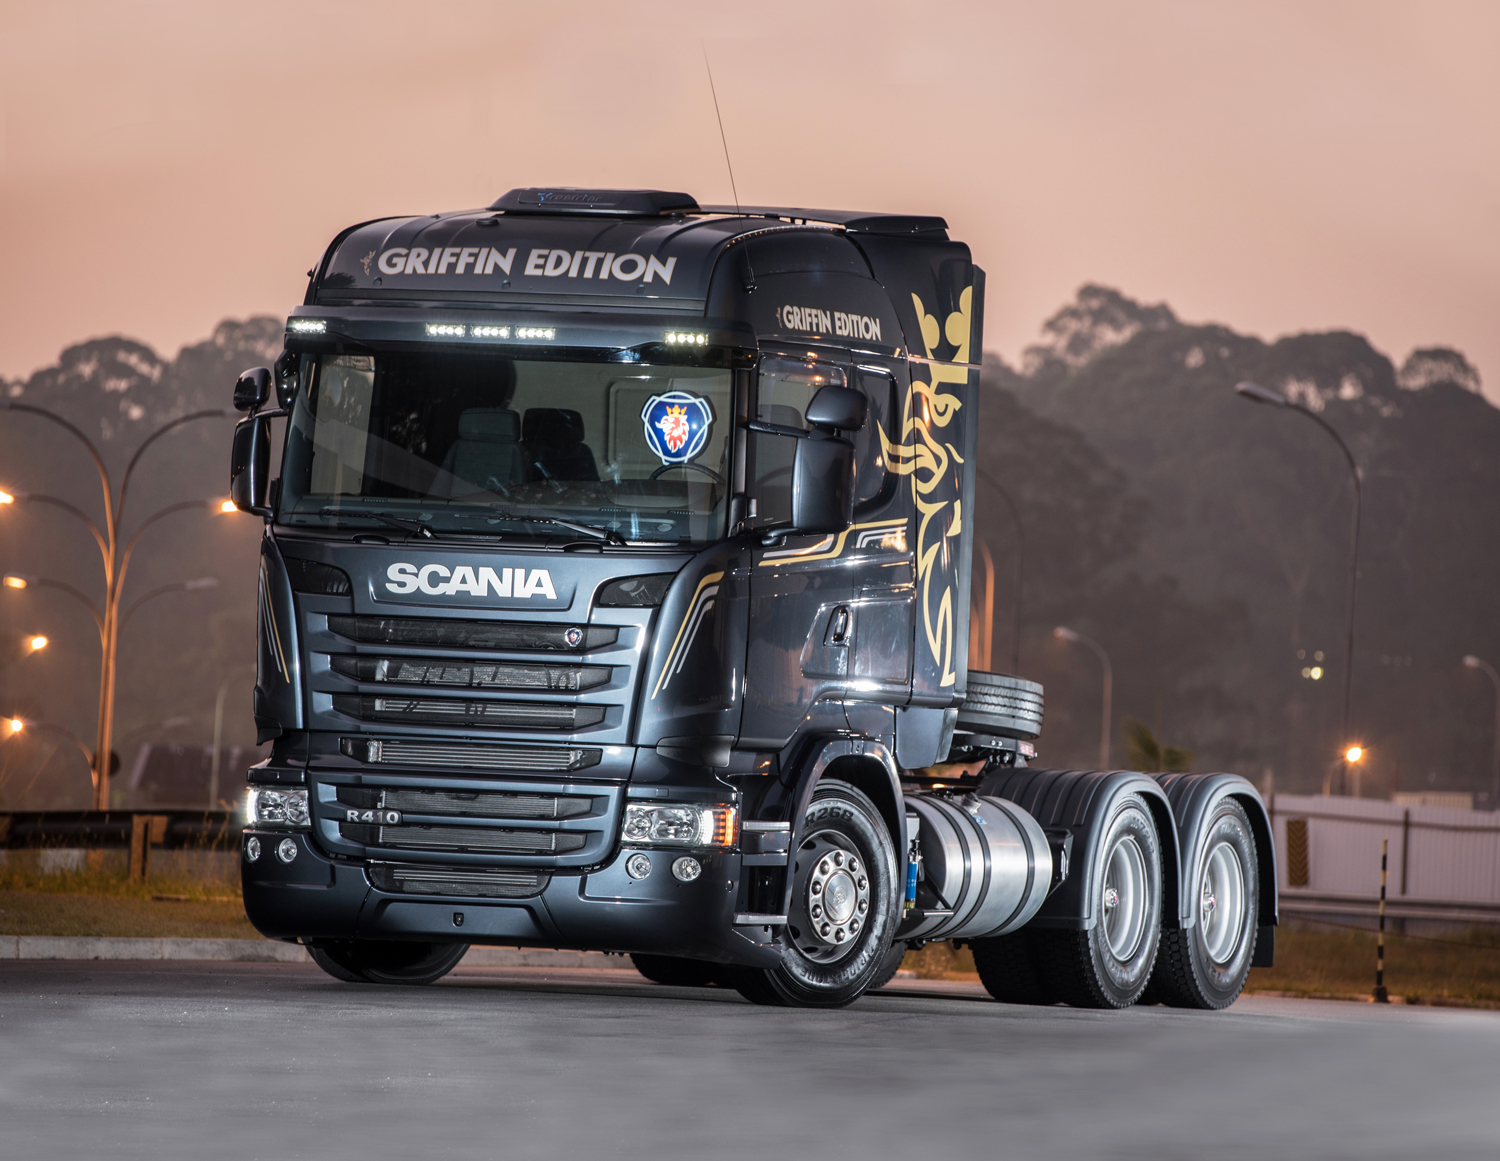 Scania lanza en Uruguay su camión GRIFFIN EDITION: La leyenda surge en las carreteras